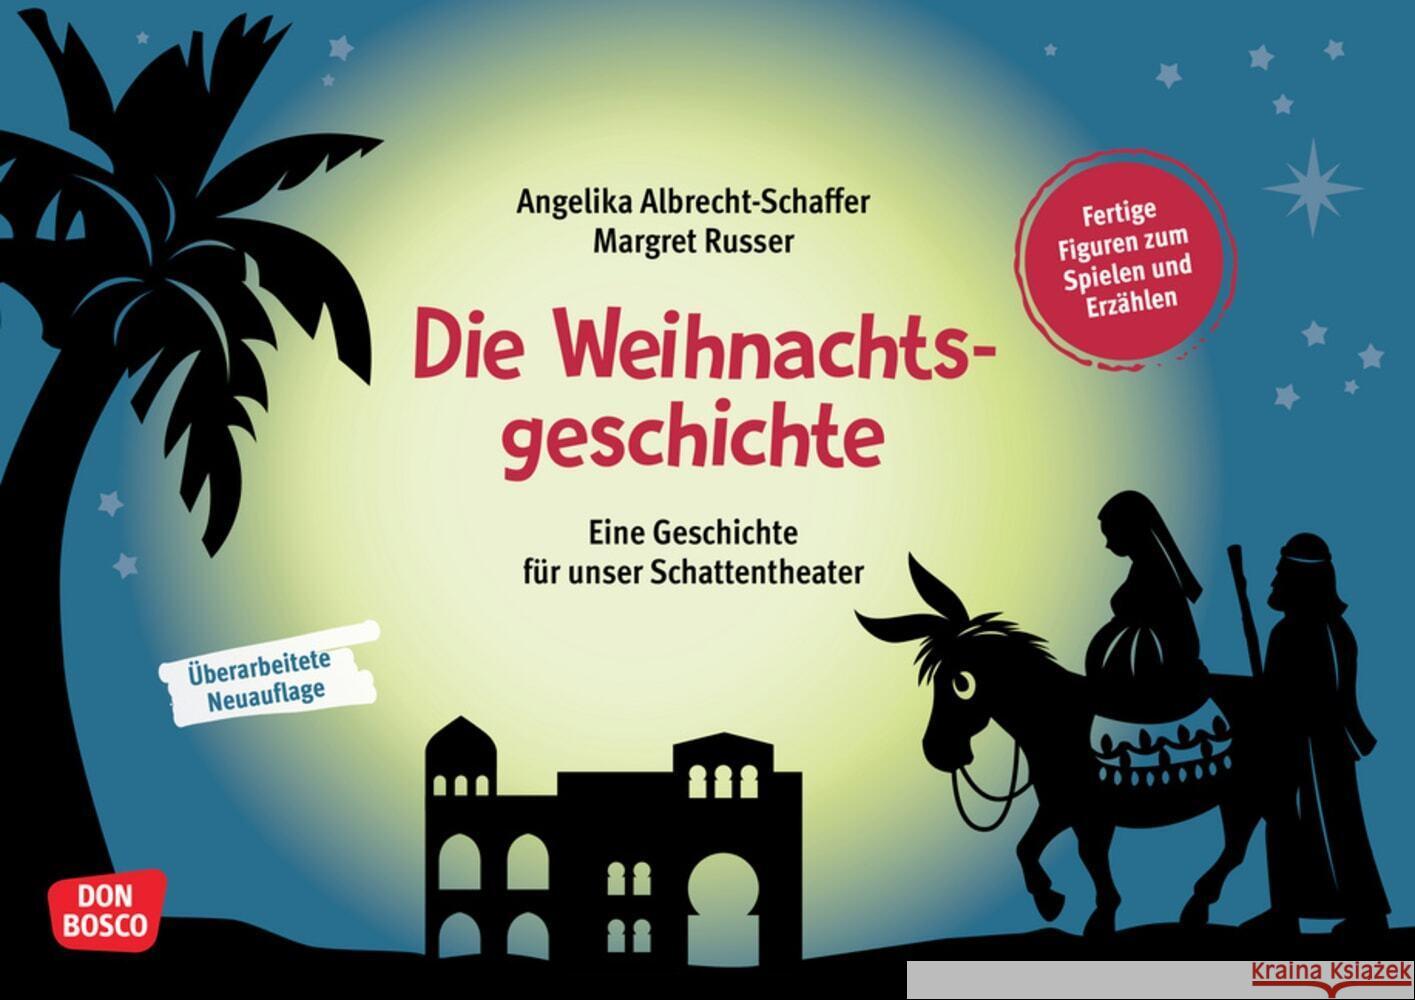 Die Weihnachtsgeschichte, m. 1 Beilage Albrecht-Schaffer, Angelika 4260694920046